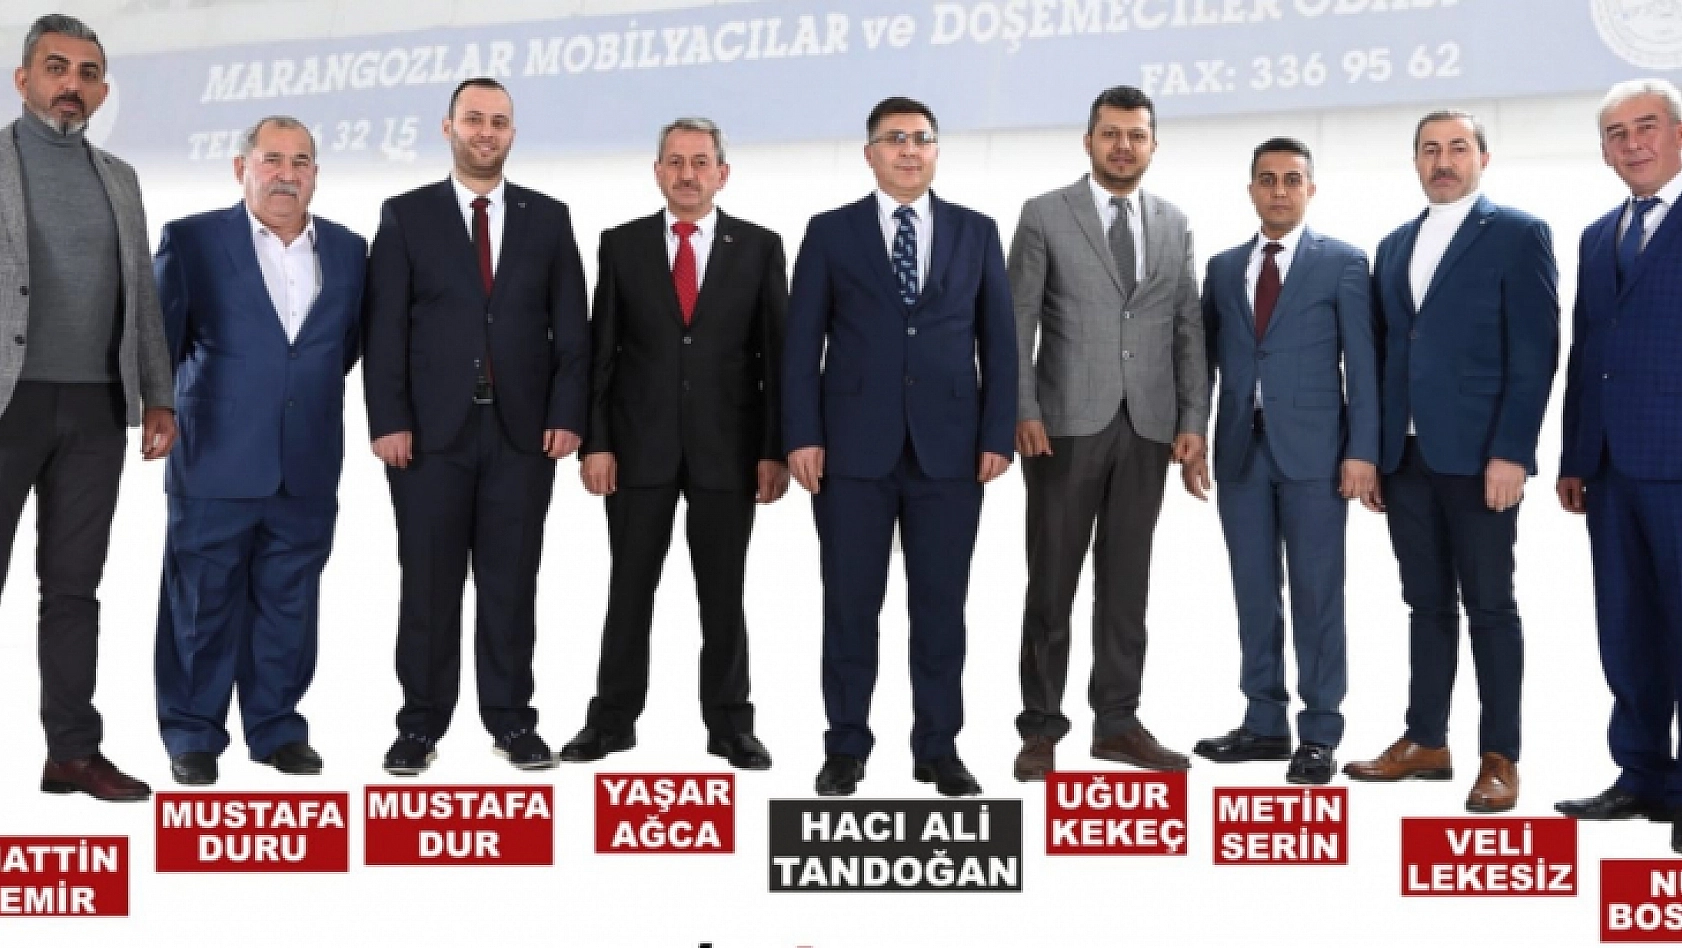 Hacı Ali Tandoğan: